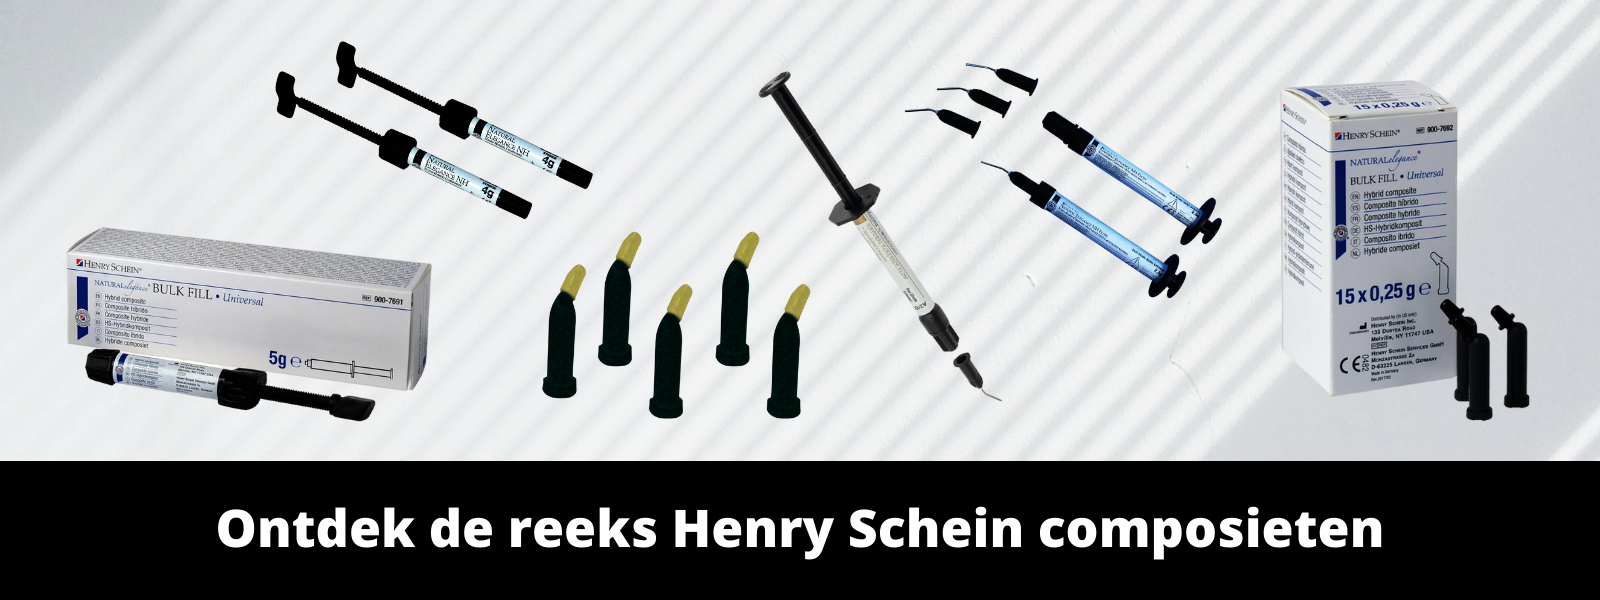 Henry Schein composites